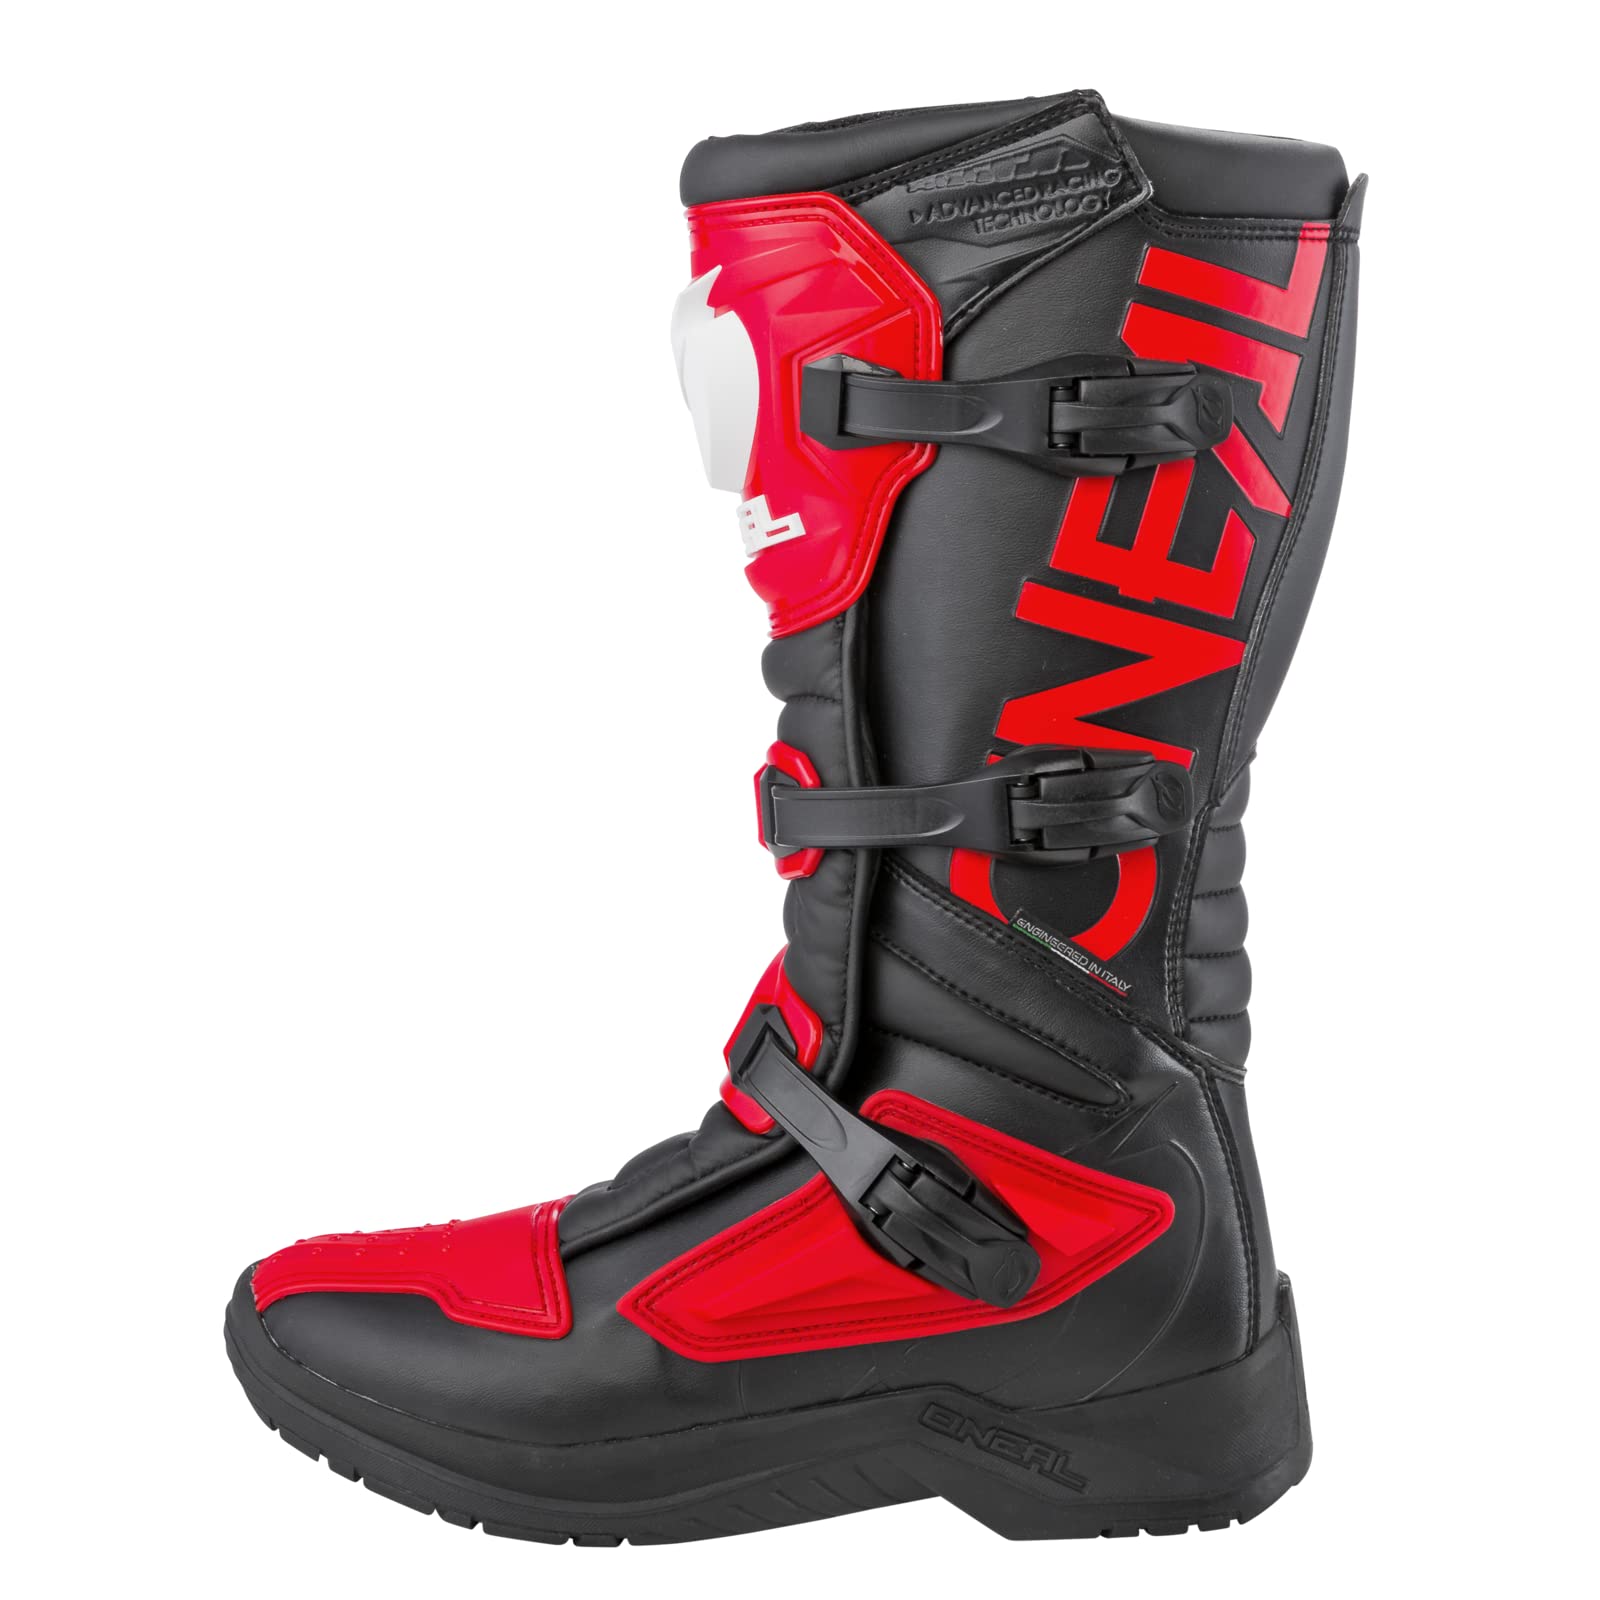 O'NEAL | Motocross-Stiefel | Motorrad Enduro | Innerer Knöchel-, Fuß, und Schaltzonenschutz, Perforiertes Innenfutter, hochwertiger Mikrofaser | Boots RSX | Erwachsene | Rot | Größe 42